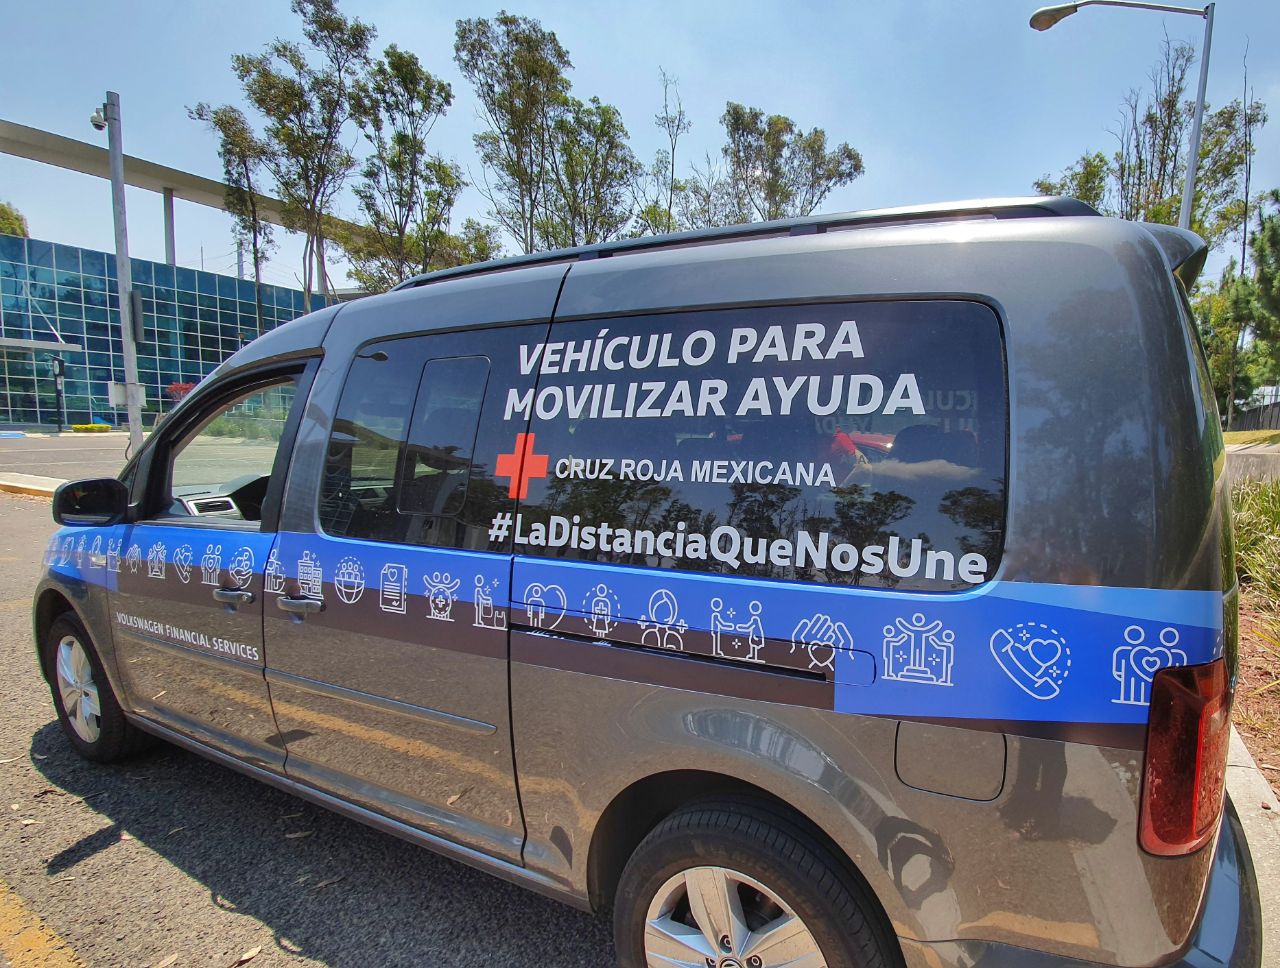 Volkswagen Financial Services pone a disposición dos vehículos para Cruz Roja Ciudad de Puebla durante la contingencia